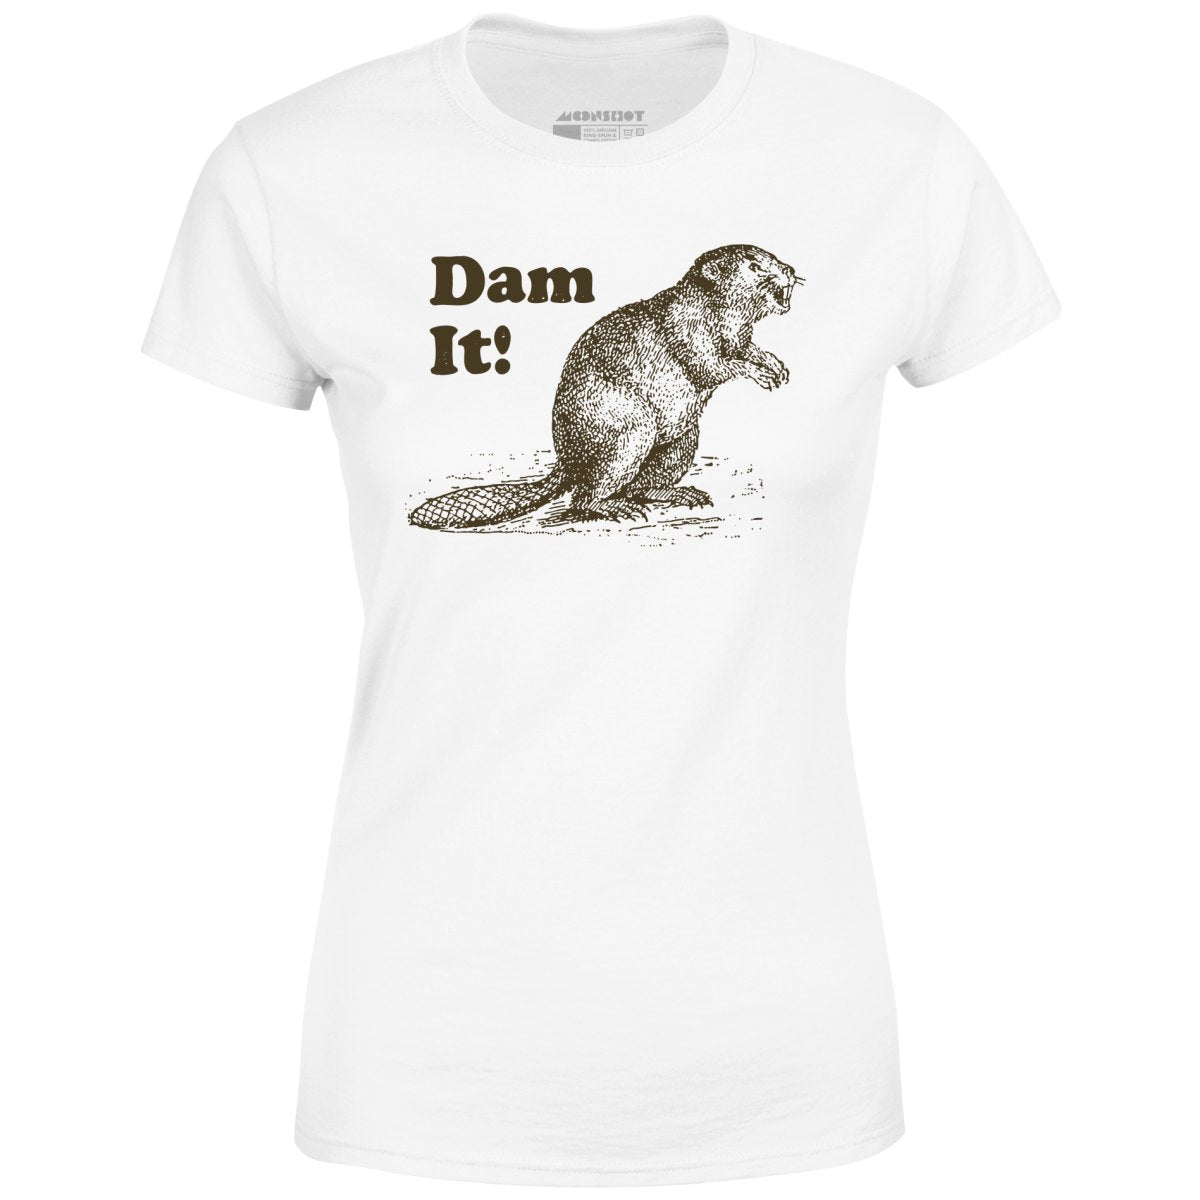 Dam It! - Women's T-Shirt